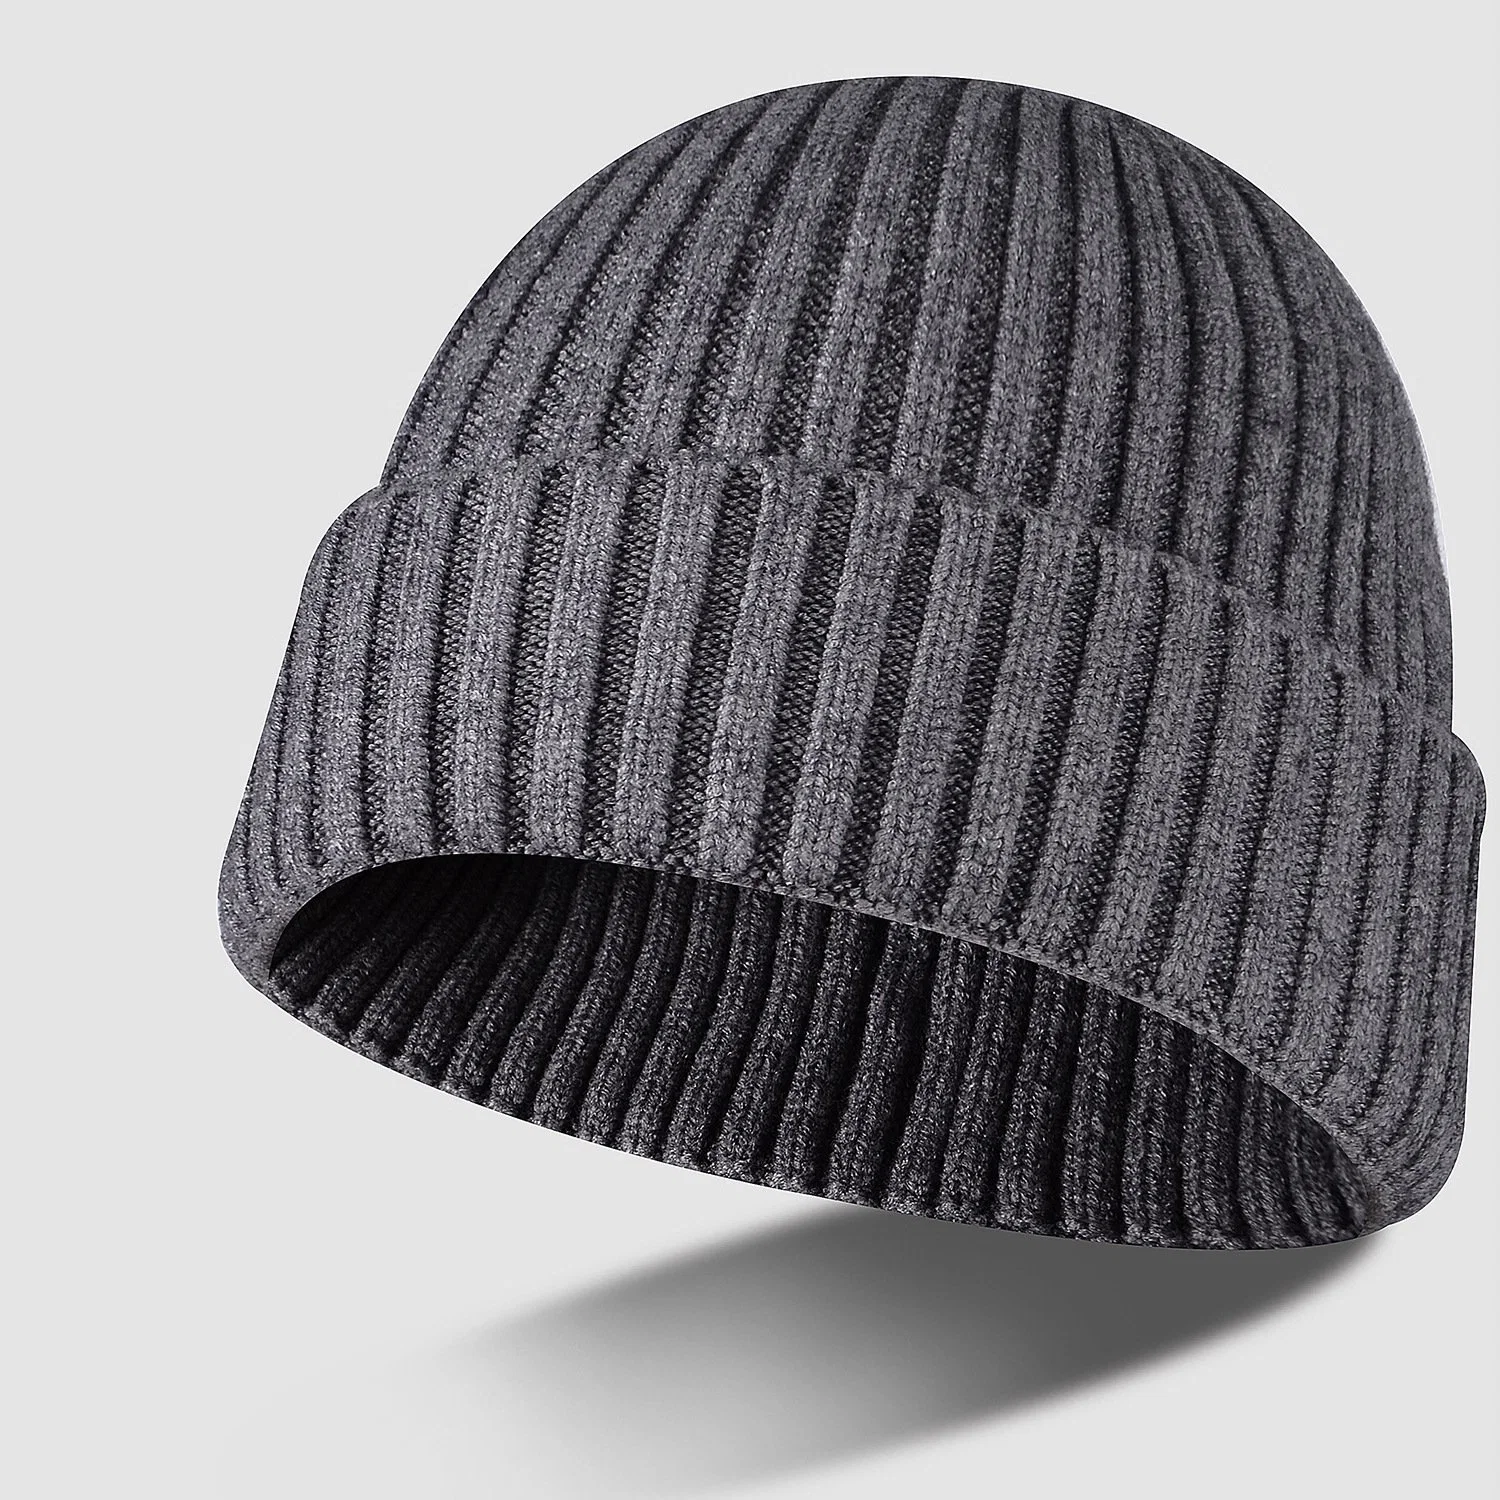 Chapeau tricoté en gros pour garder la tête au chaud en hiver, bonnet uni teint sur mesure.